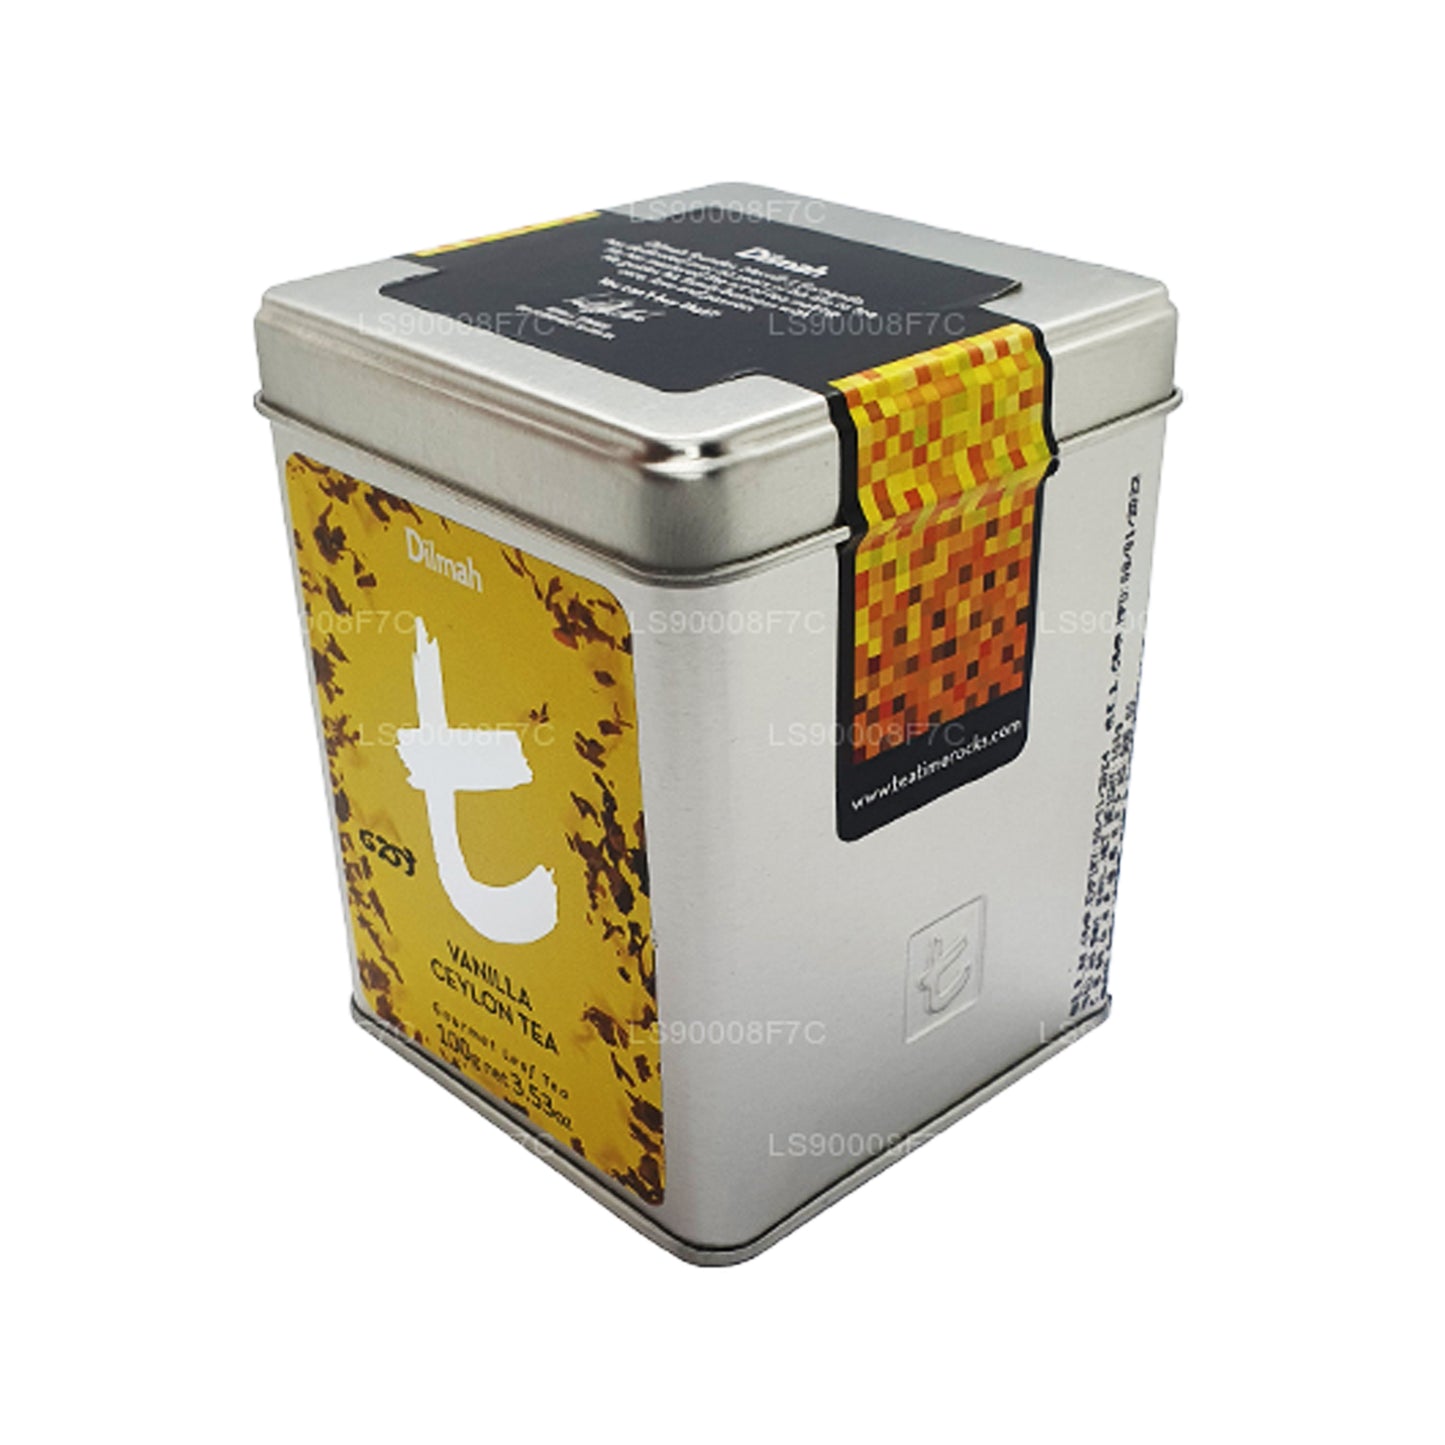 Dilmah T-Serie Vanille-Ceylon-Tee (100 g)